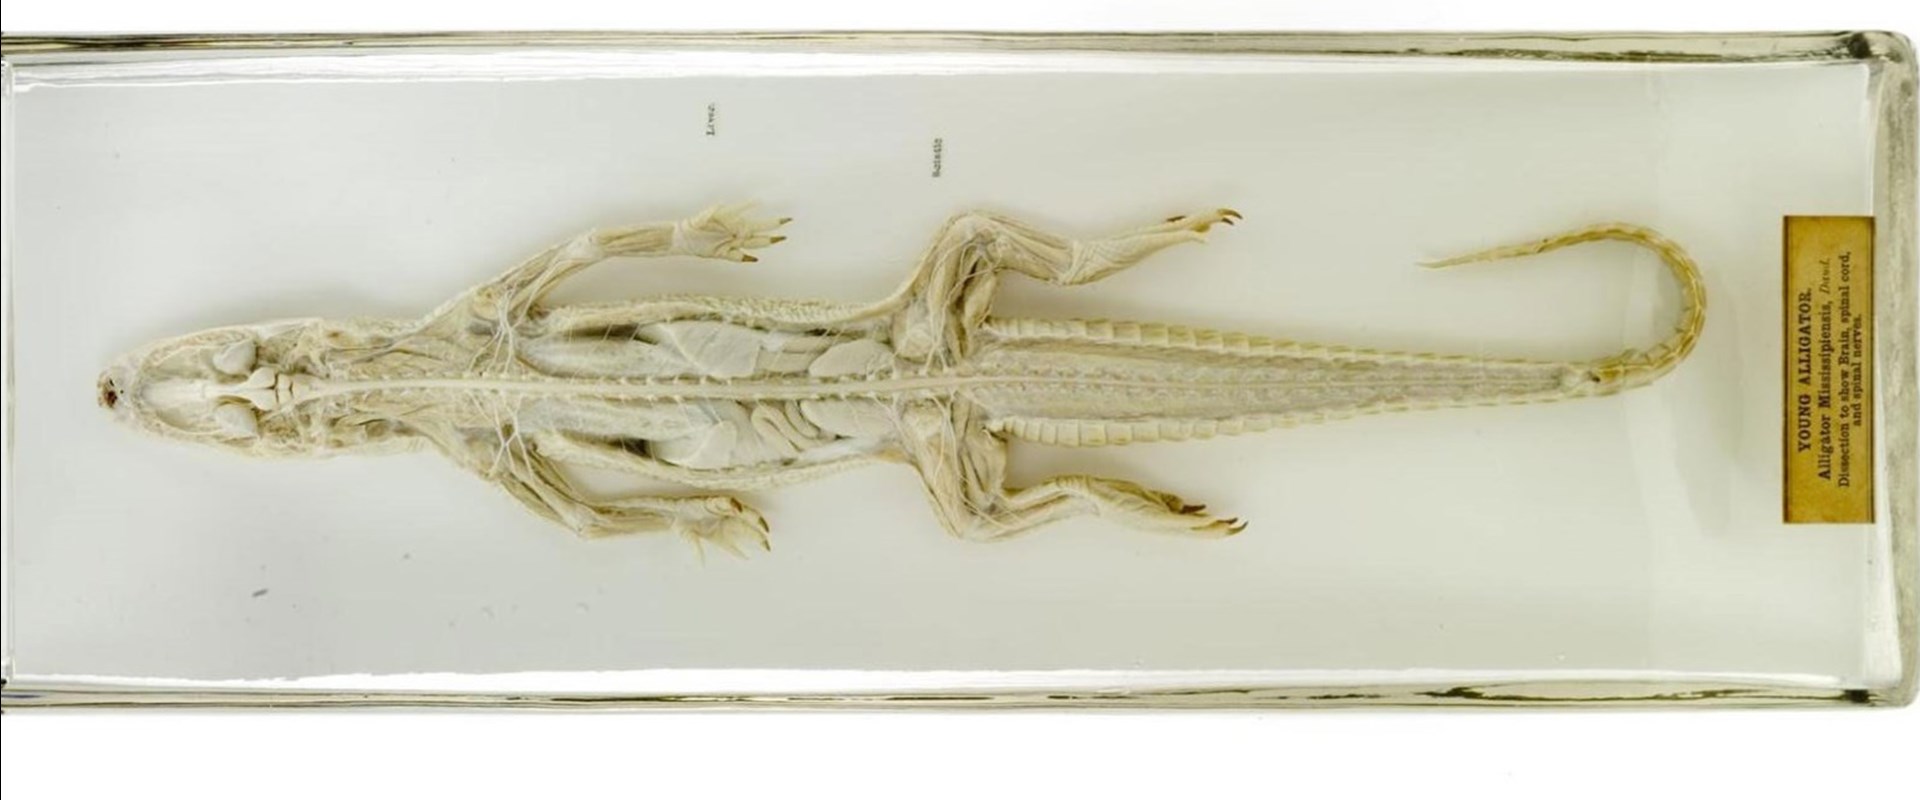 Alligator Specimen 1